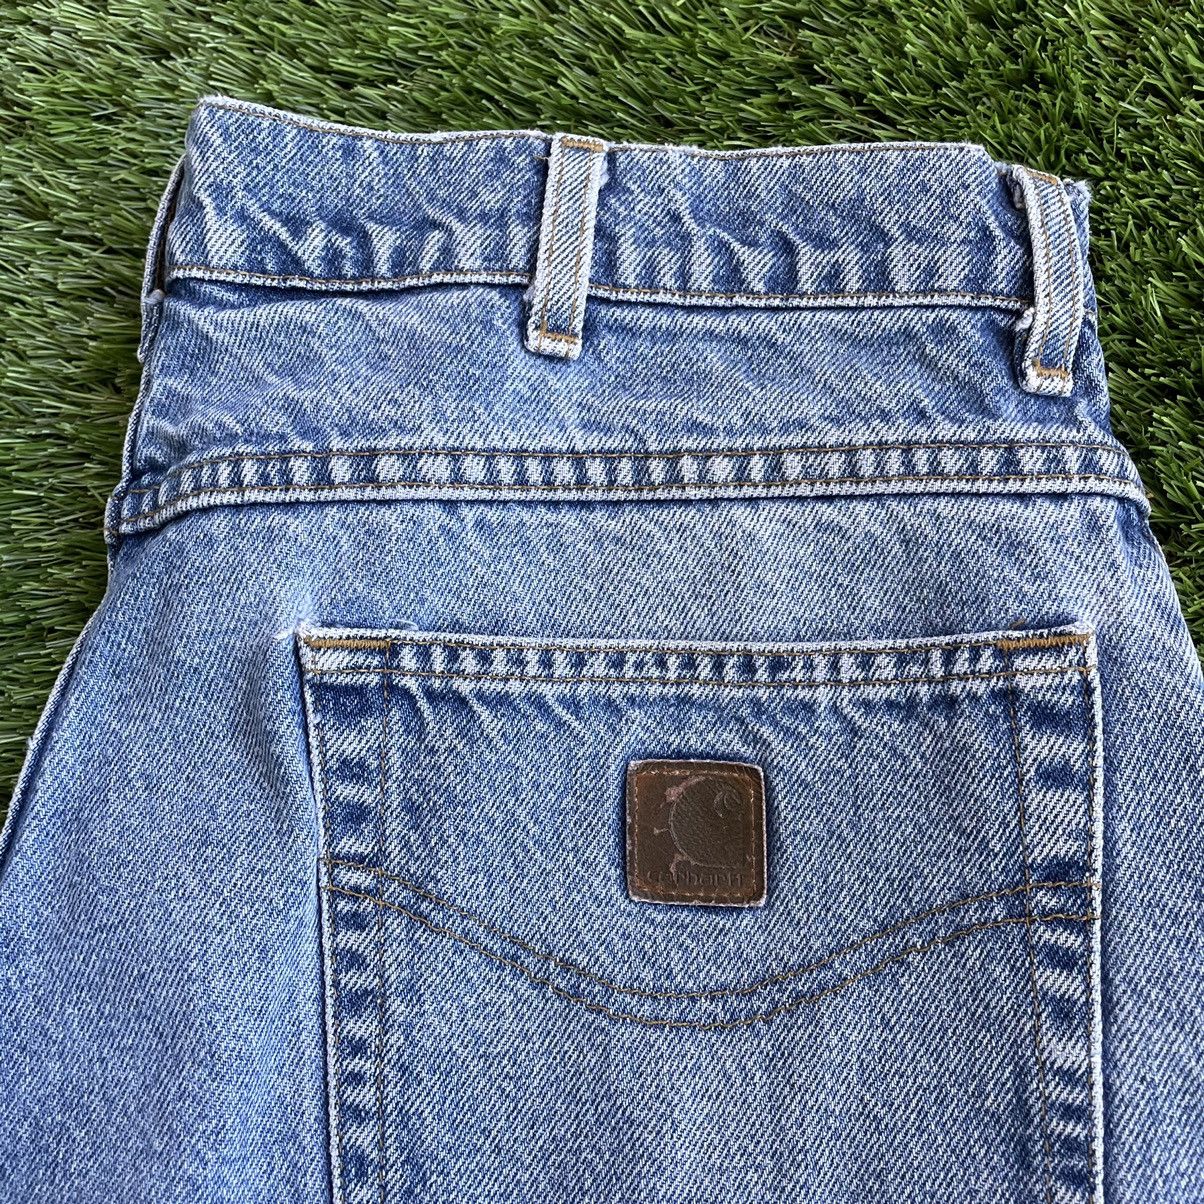 Vintage Vintage Carhartt Denim Jeans Size US 34 / EU 50 - 2 Preview